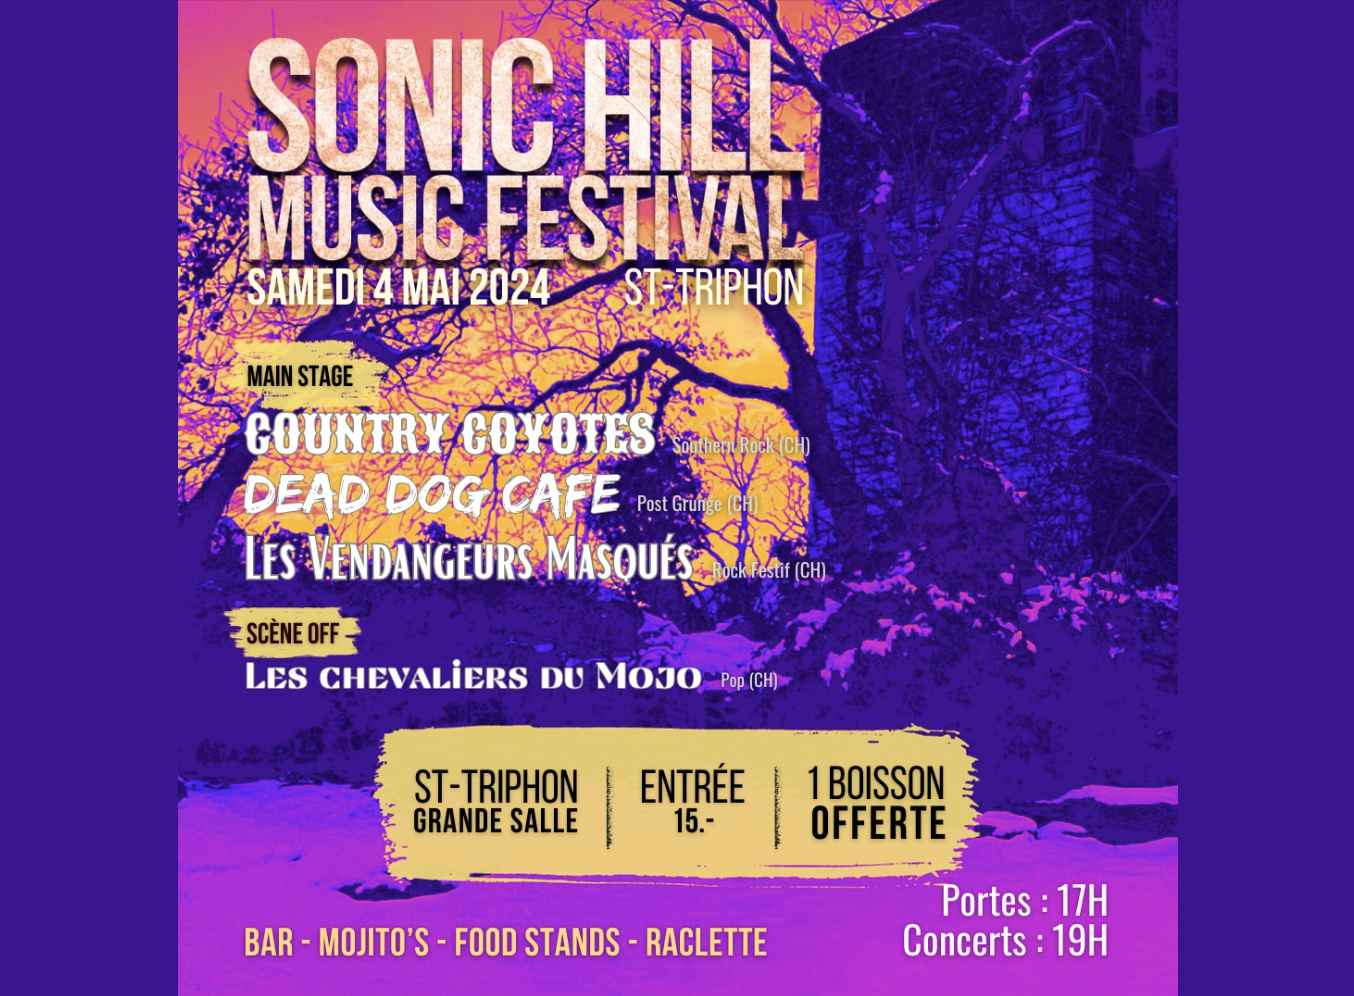 SONIC HILL MUSIC FESTIVAL